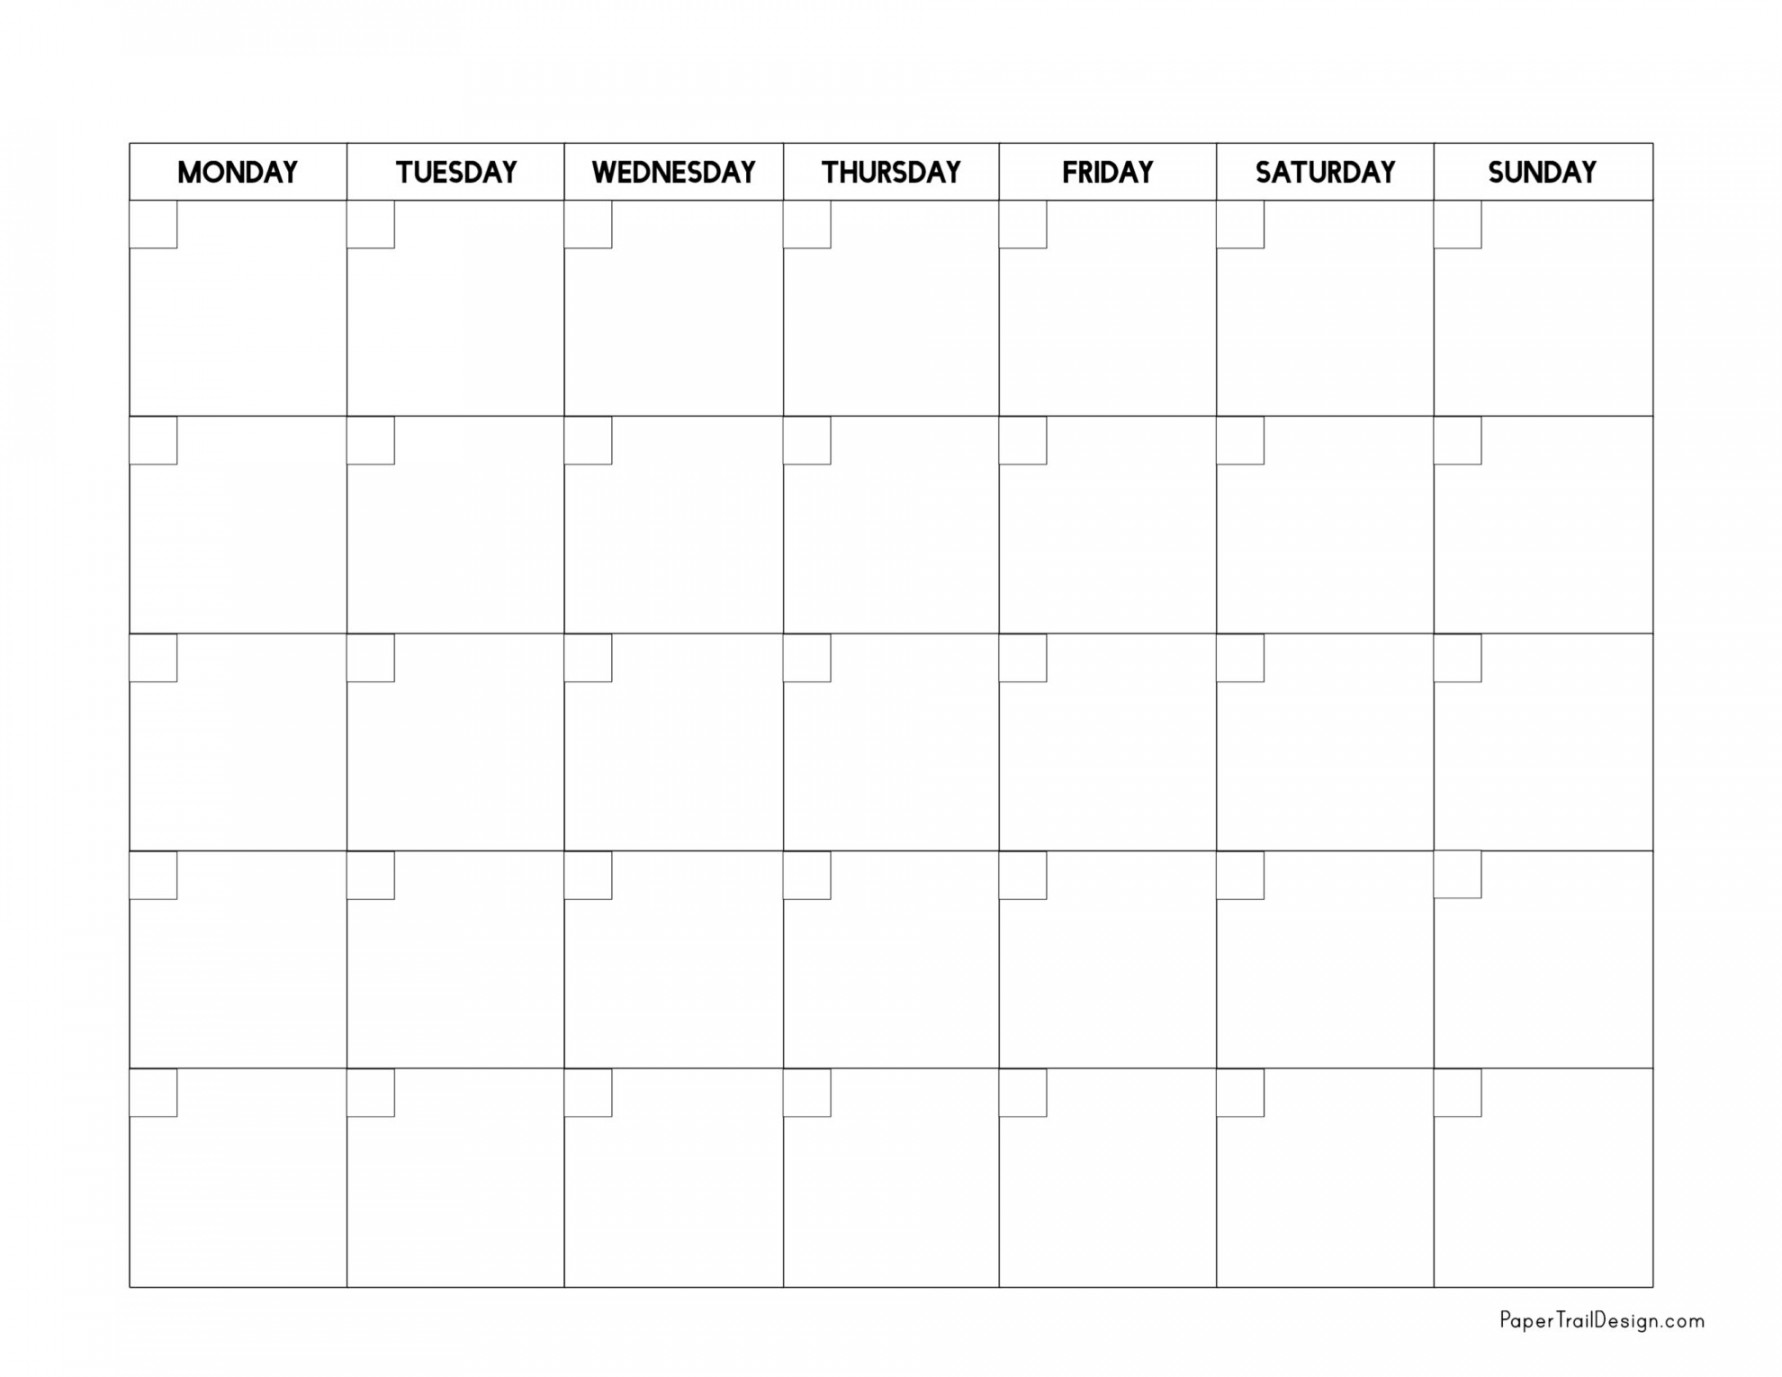 Monday Start Blank Calendar Template - Paper Trail Design